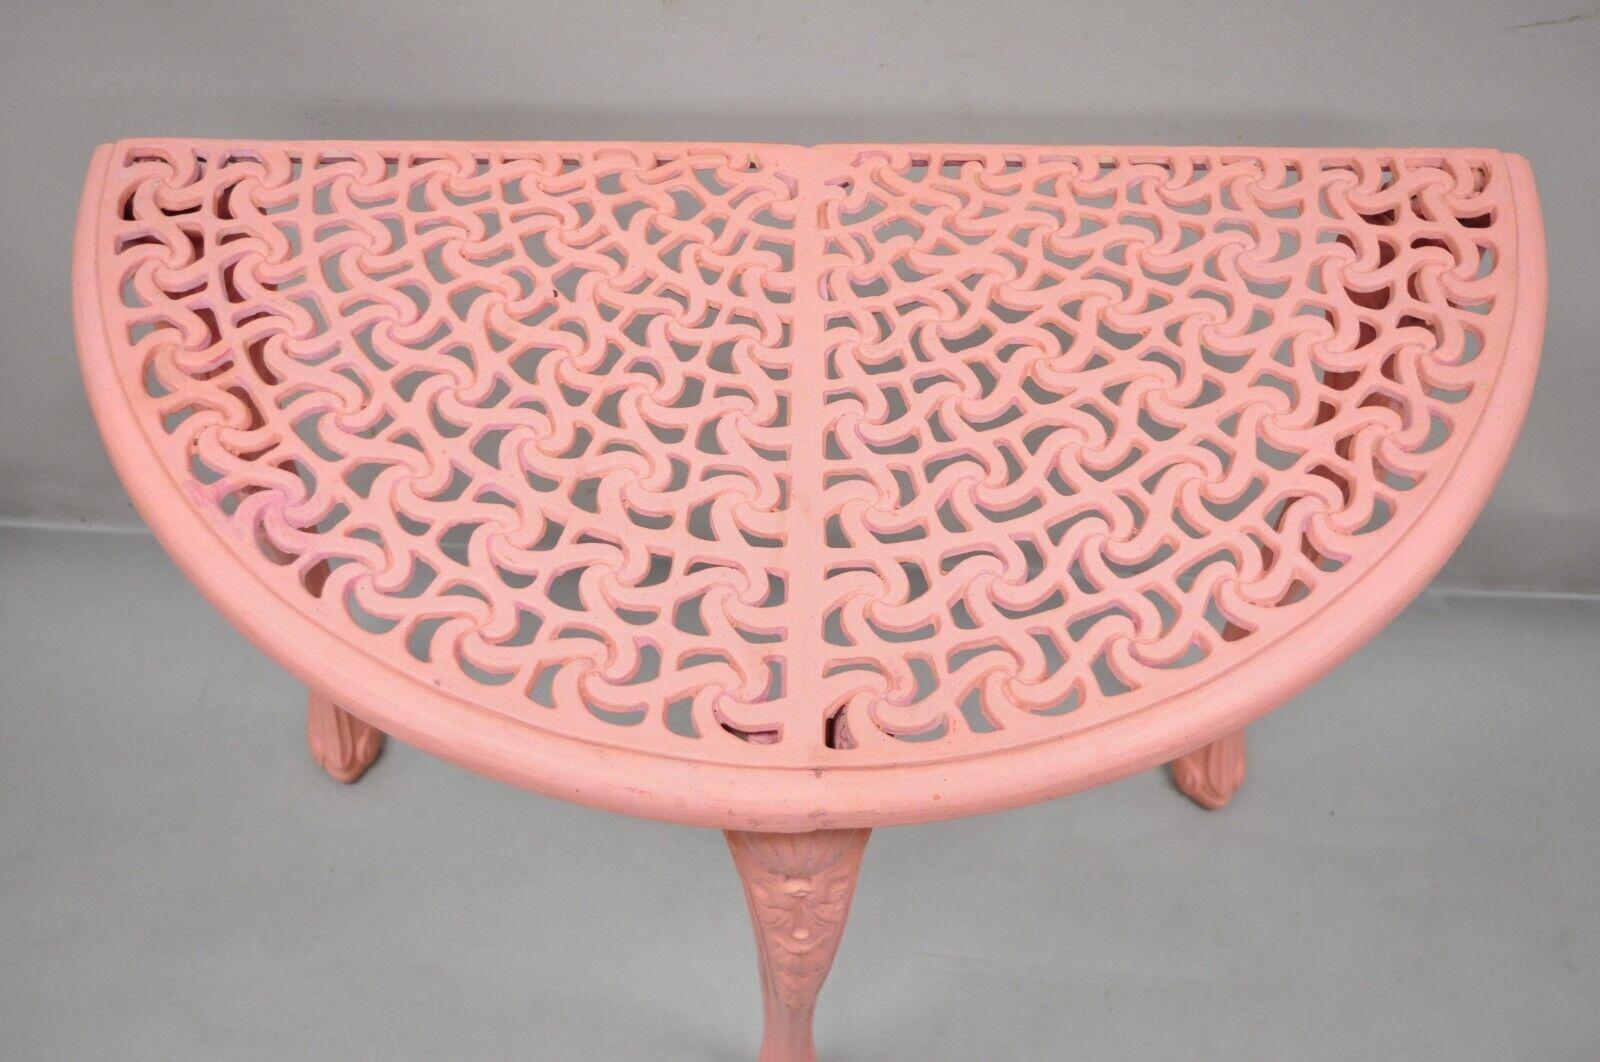 Vintage Französisch neoklassischen Stil gegossenem Aluminium rosa Demilune Konsole Tisch. Artikel verfügt über durchbrochene dekoriert oben, rosa lackiert Finish, Aluminium-Guss-Konstruktion, sehr schöne Vintage-Artikel, großen Stil und Form. Etwa